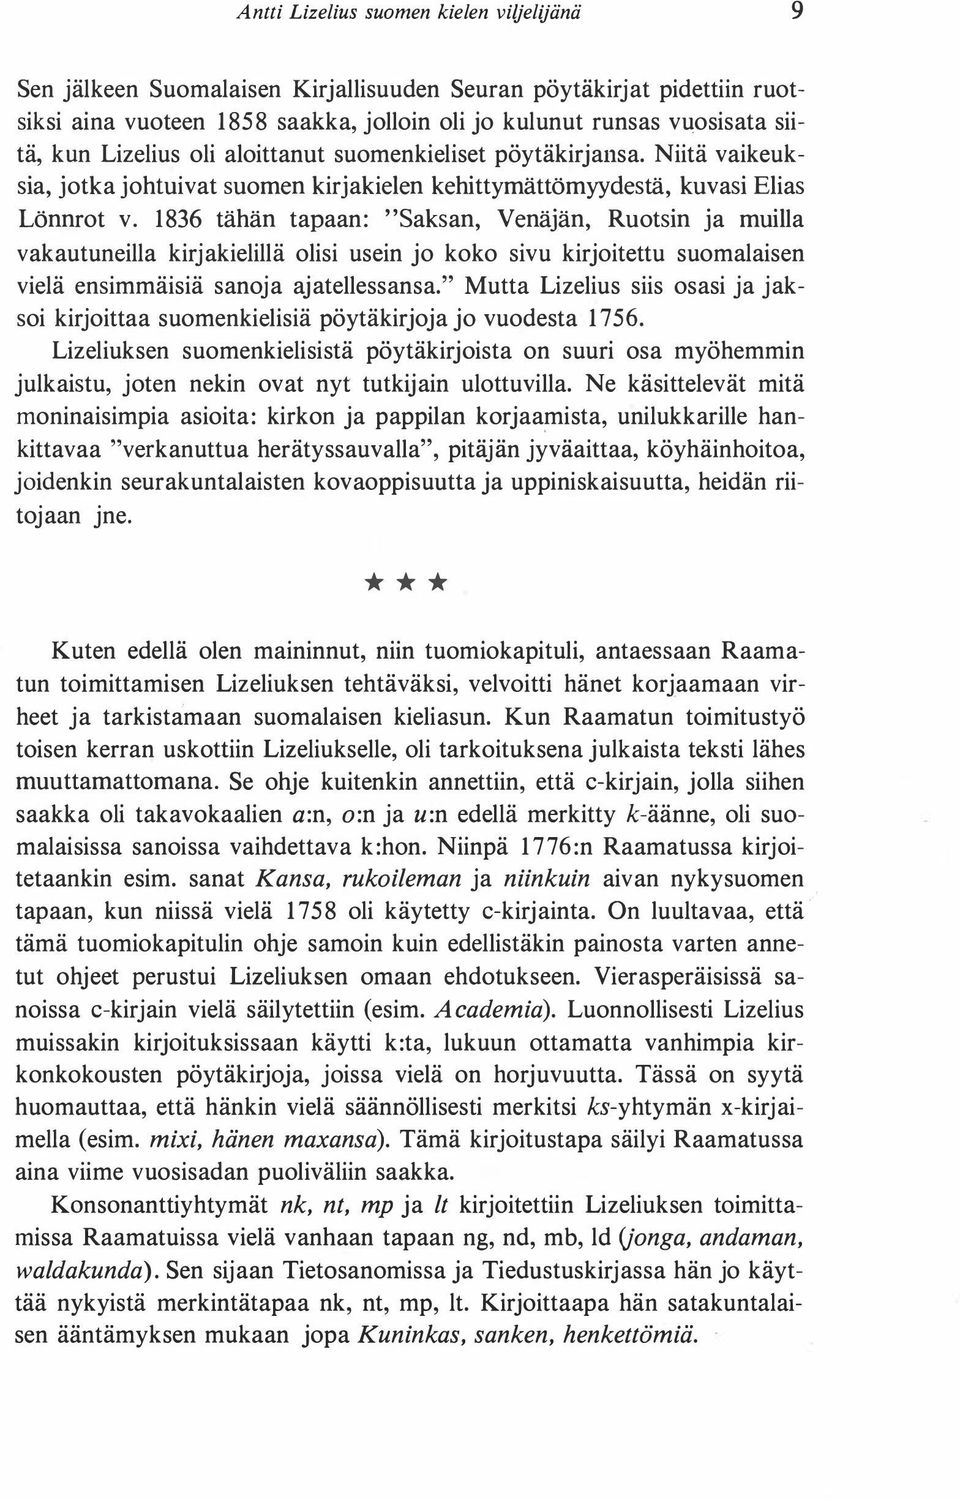 1836 tähän tapaan: "Saksan, Venäjän, Ruotsin ja muilla vakautuneilla kirjakielillä olisi usein jo koko sivu kirjoitettu suomalaisen vielä ensimmäisiä sanoja ajatellessansa.